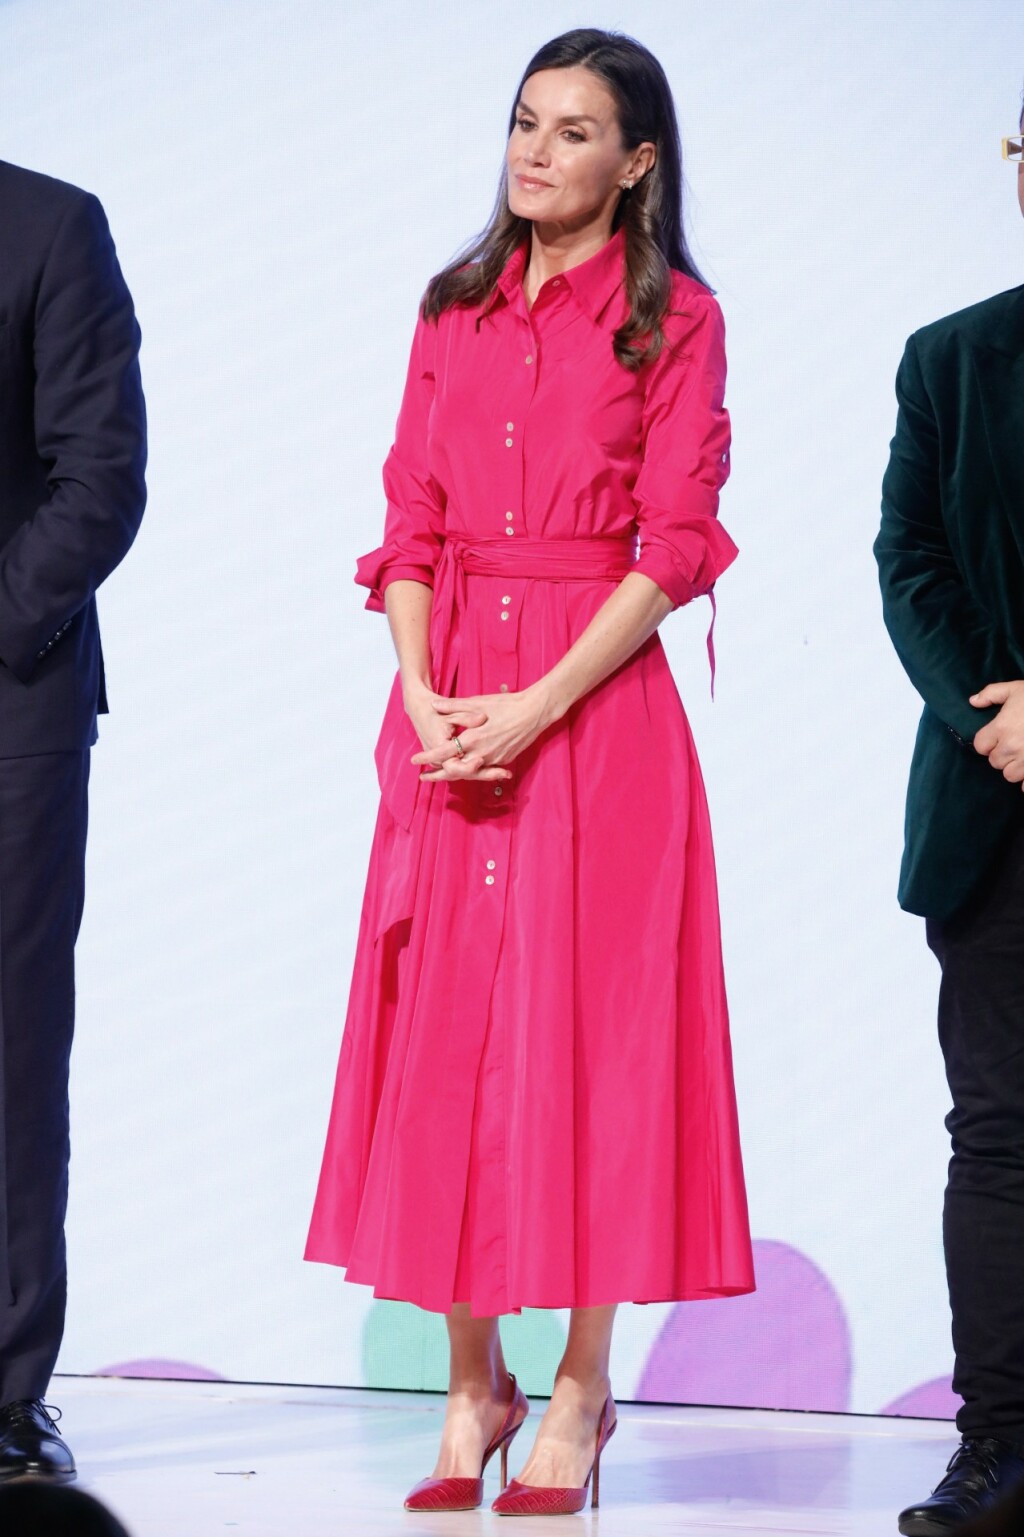 Kraljica Letizia u hot pink haljini